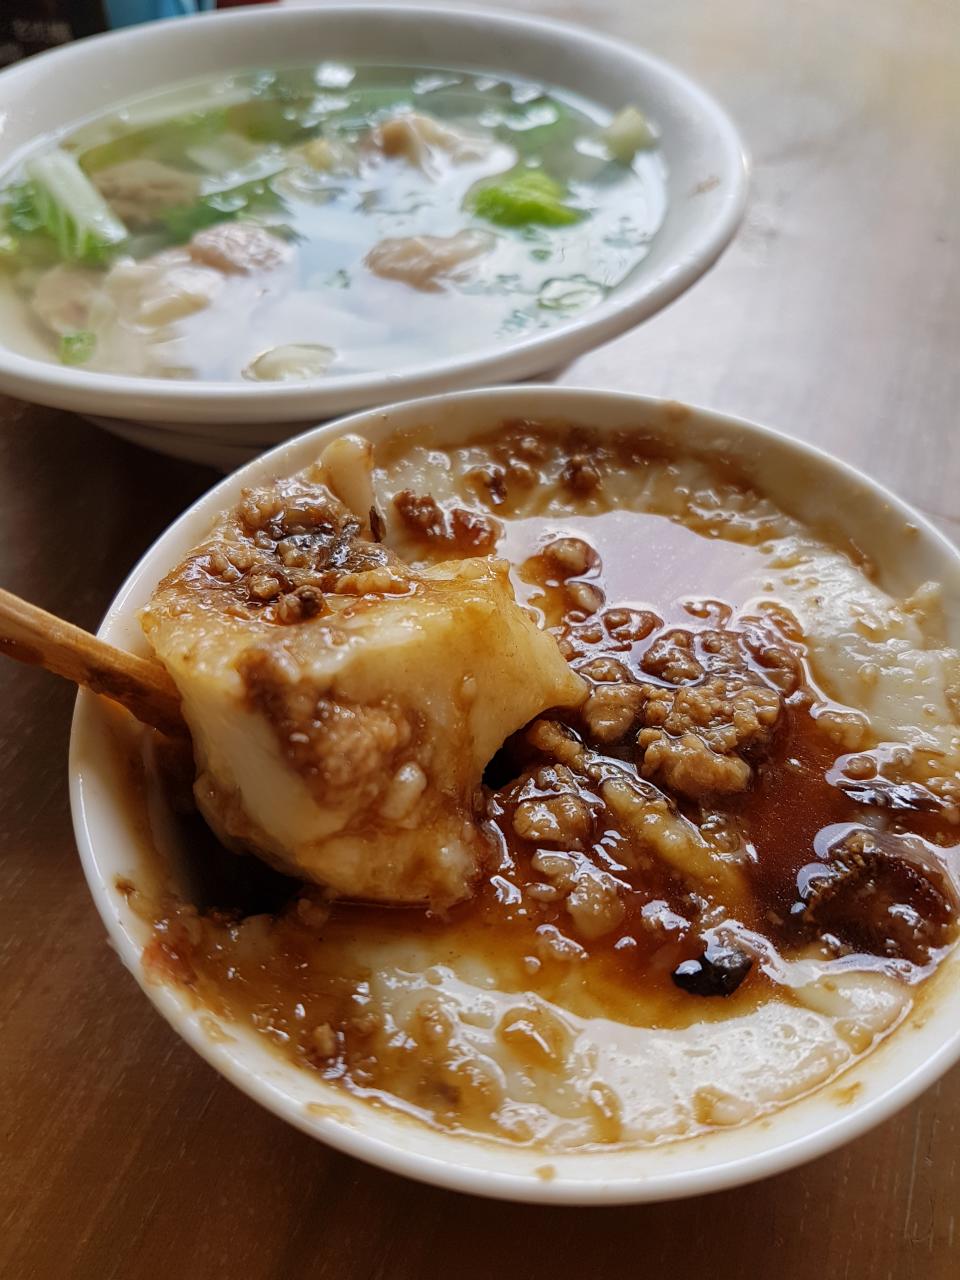 ▲用木片吃的碗粿(25元)，醬汁甘甜、肉燥噴香，也是老街碗粿的招牌菜。